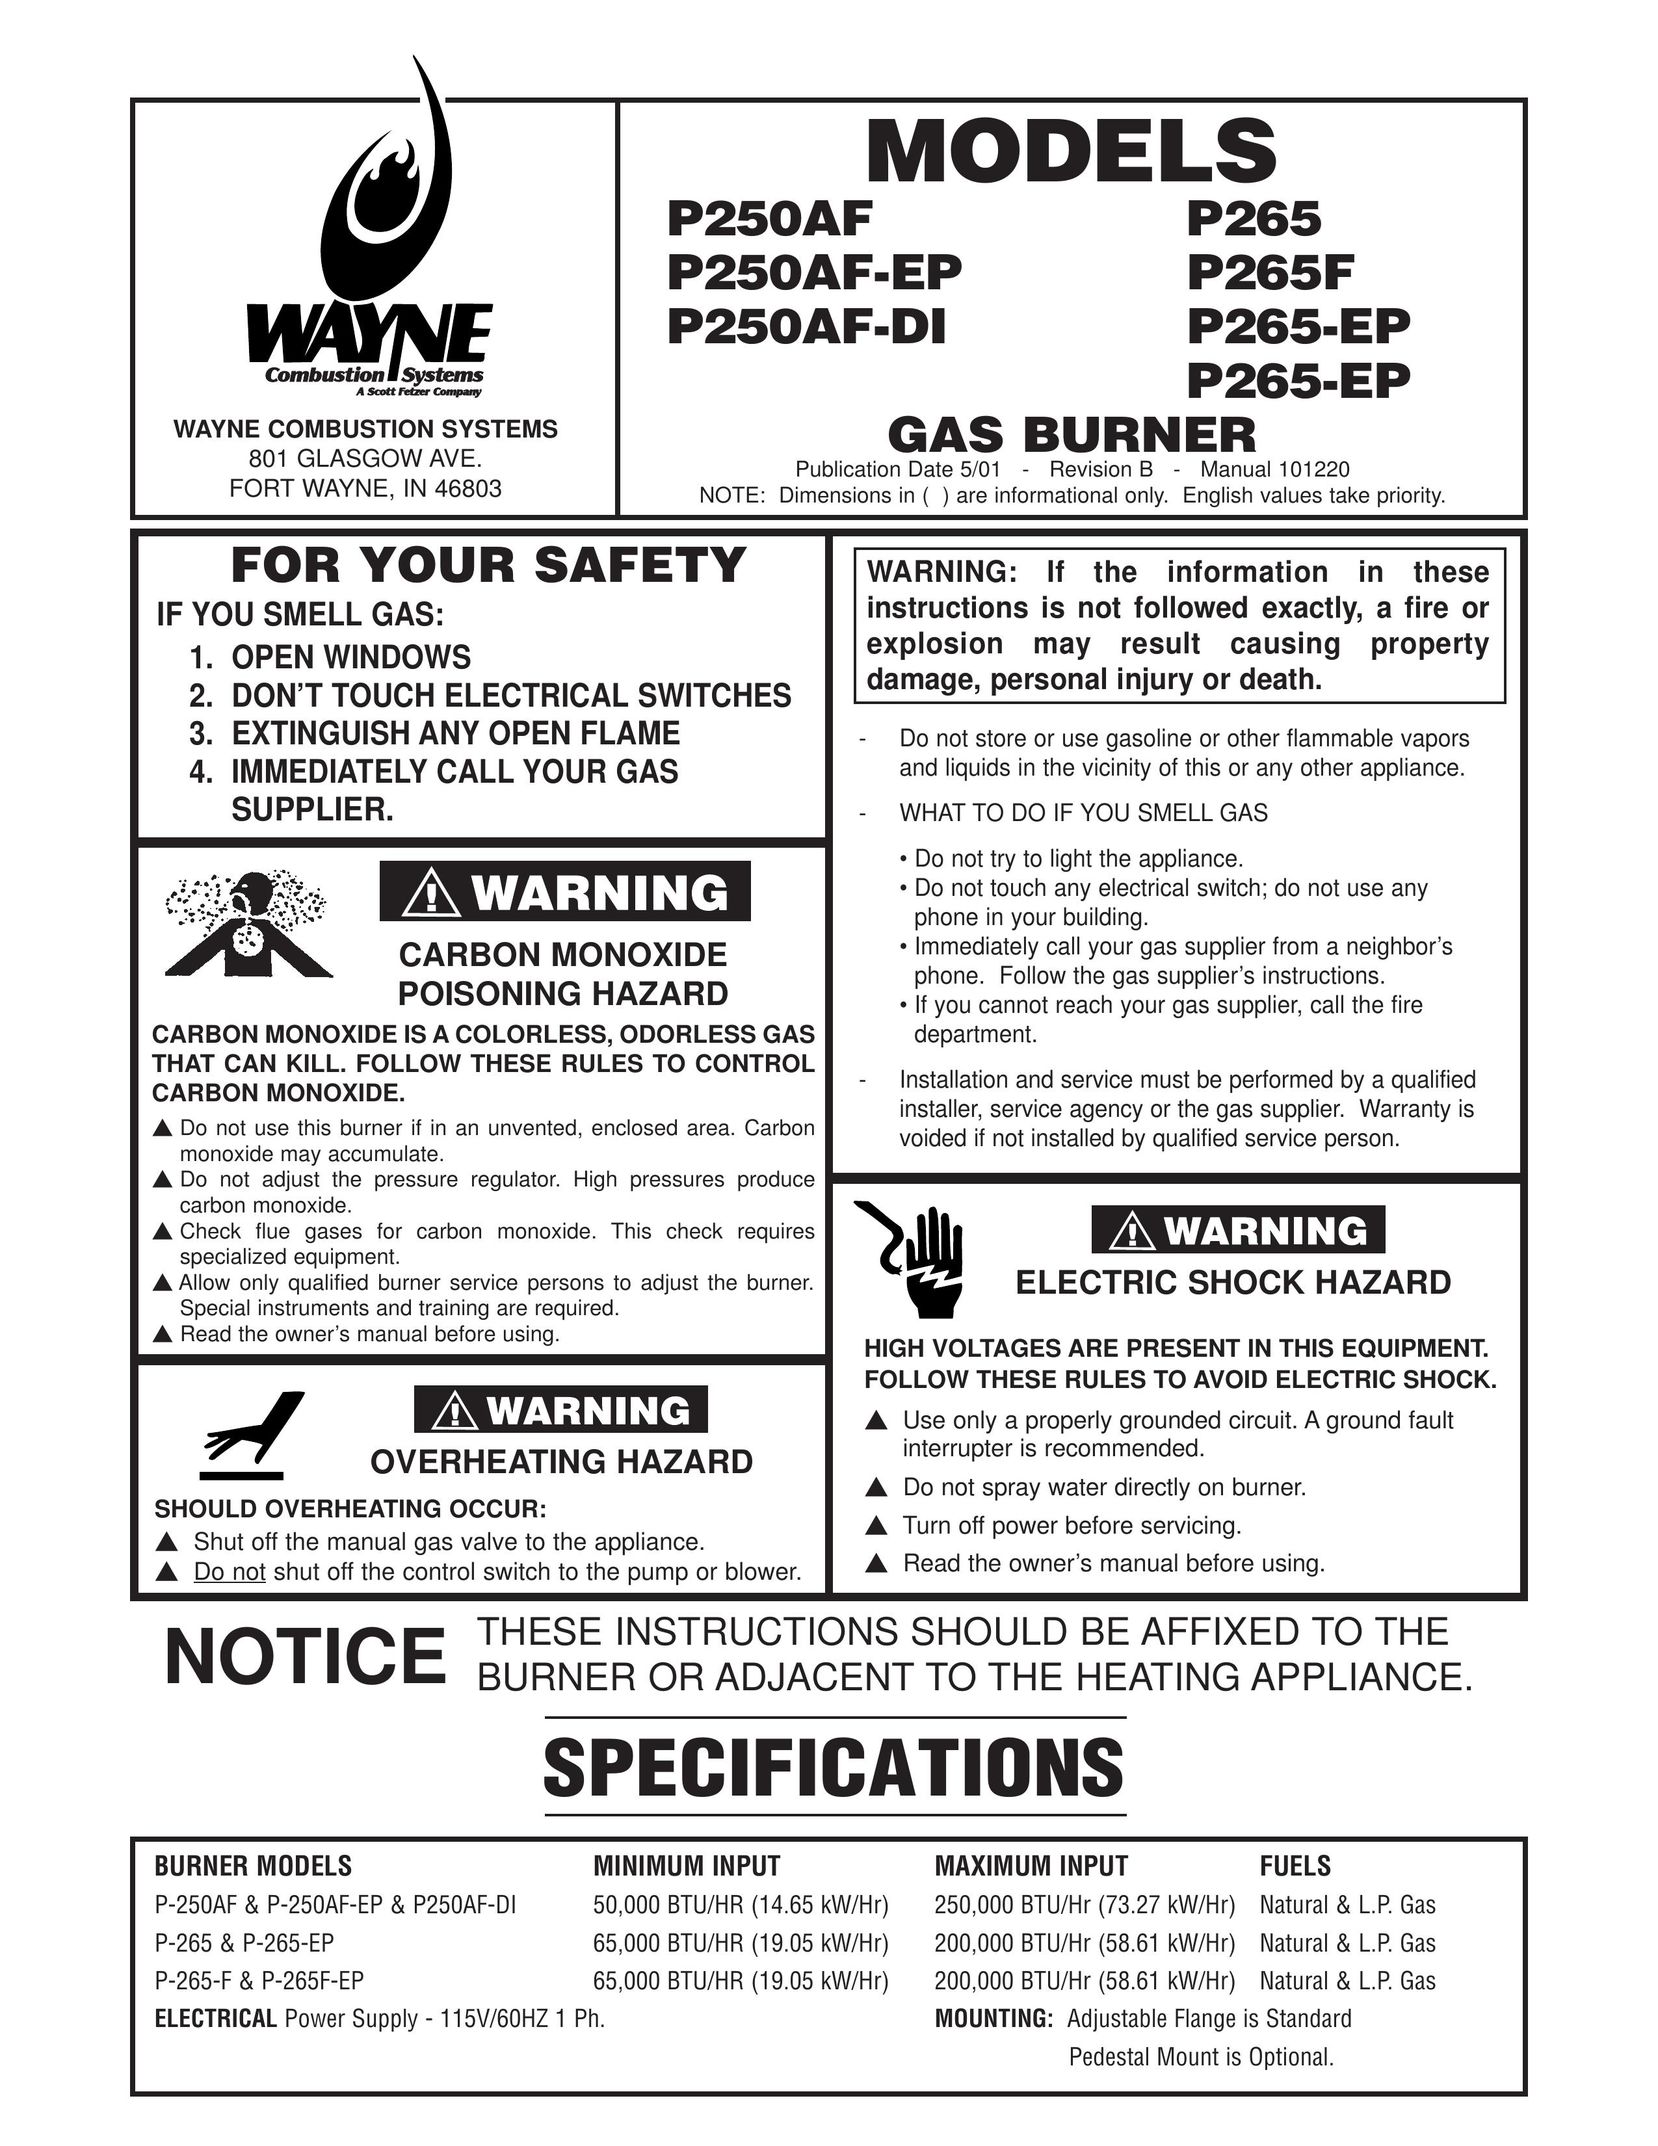 Wayne P250AF-DI Burner User Manual